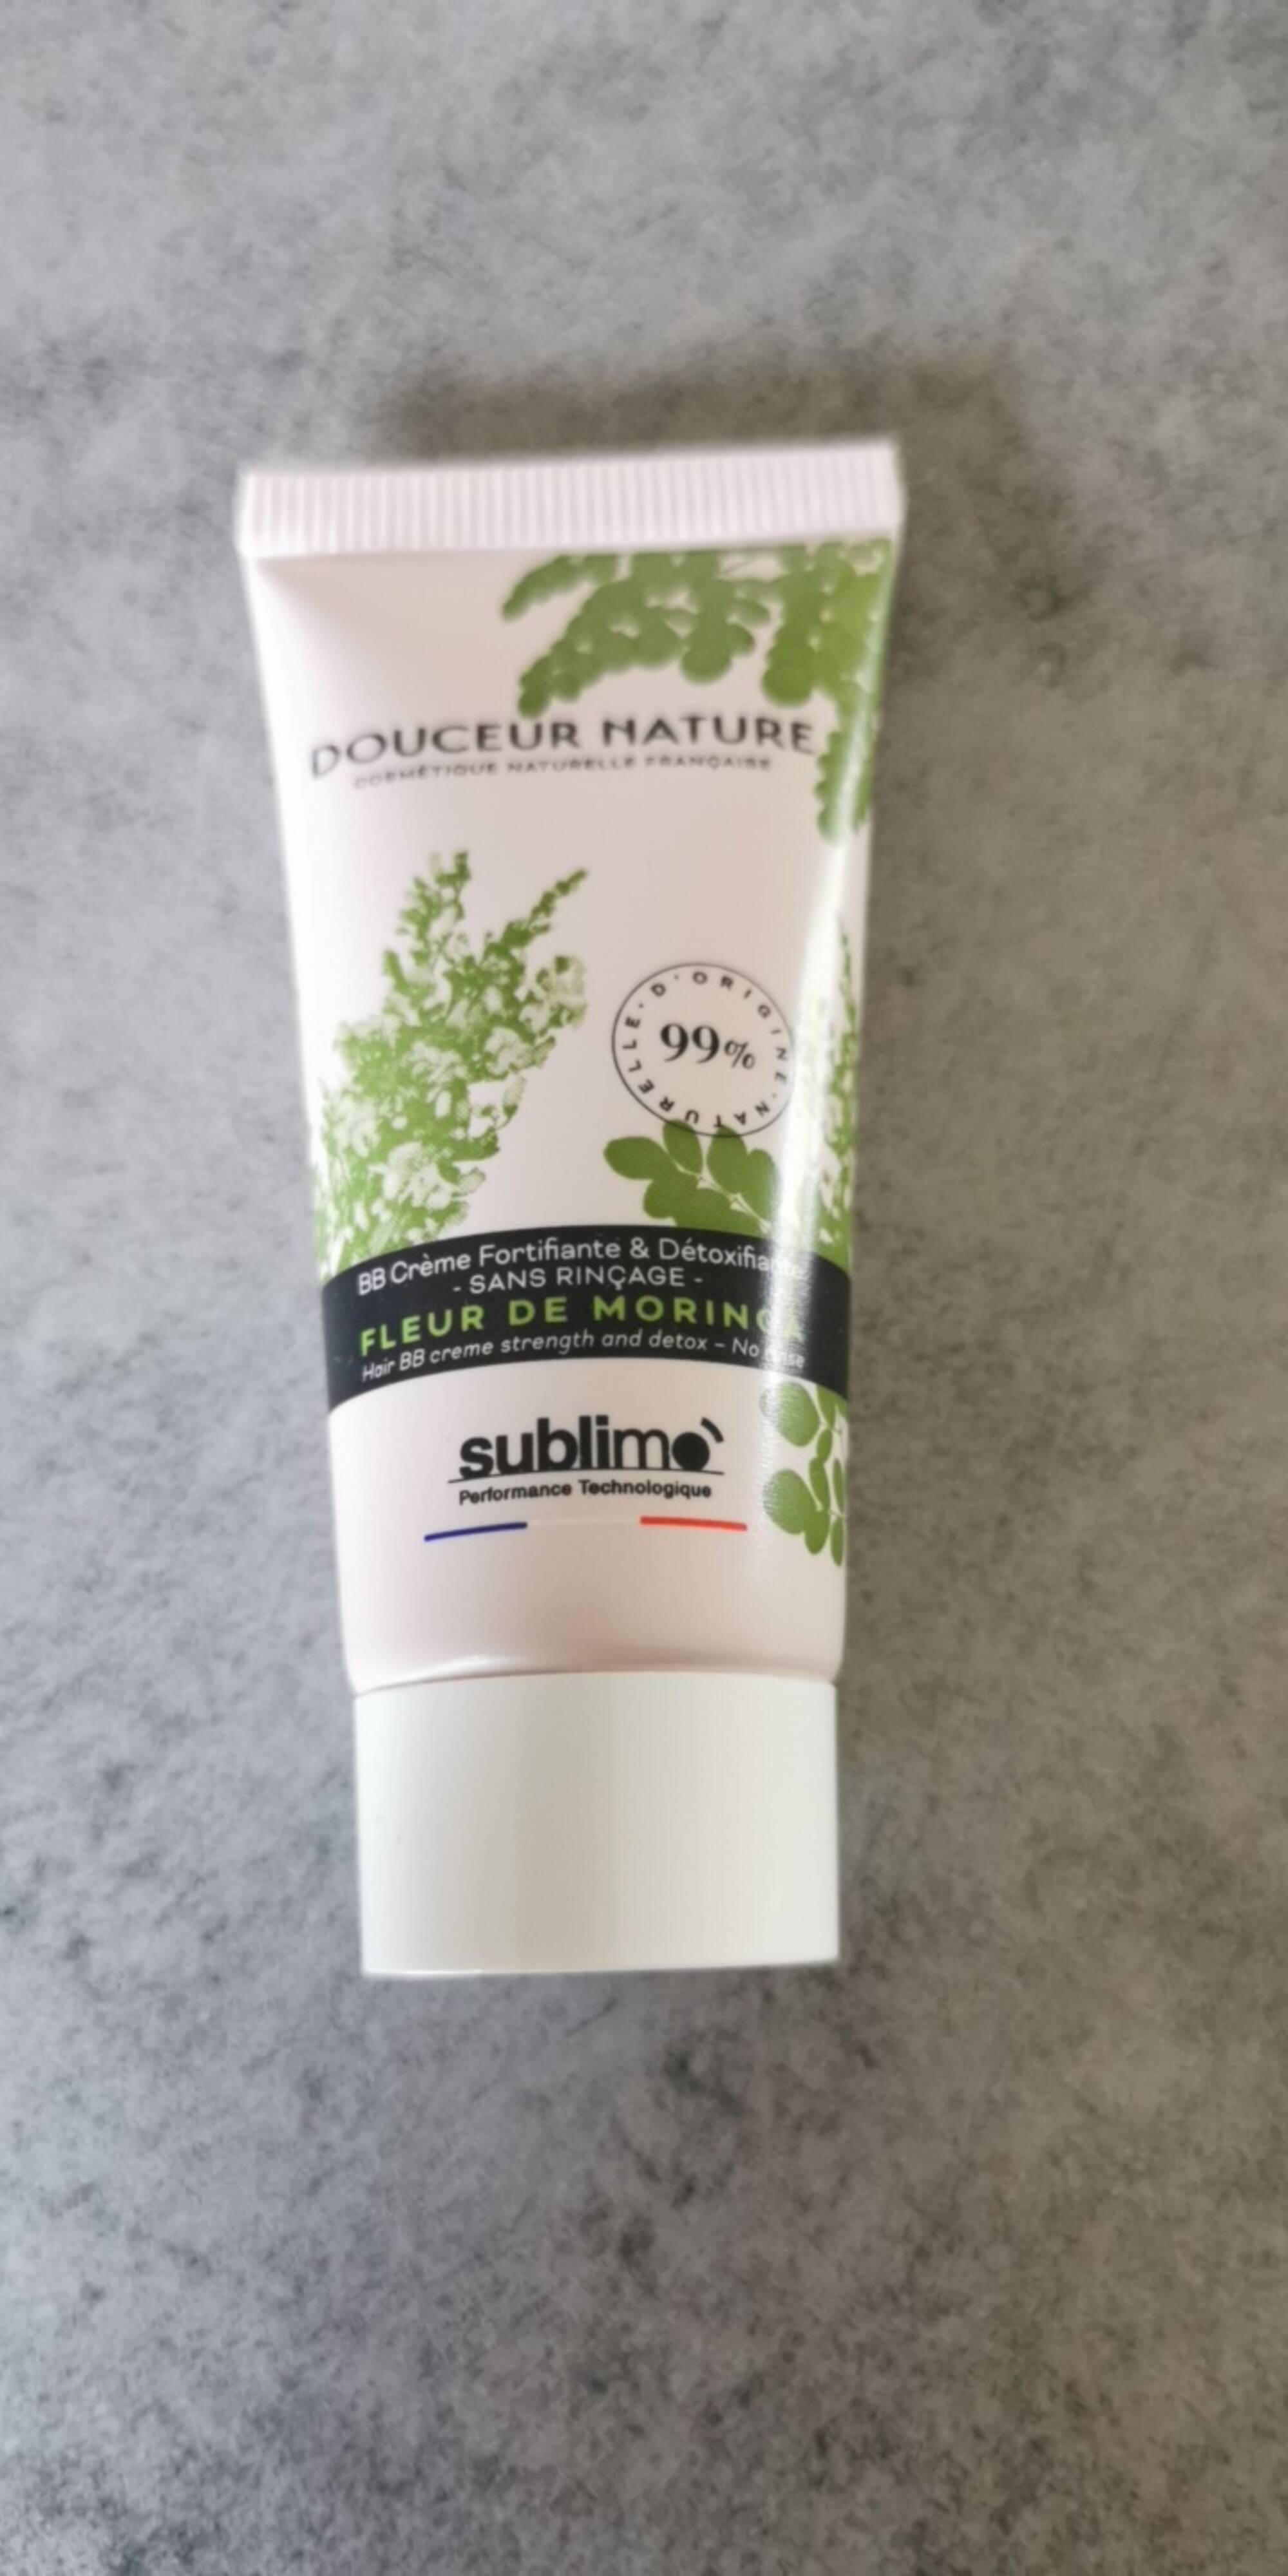 SUBLIMO - Douceur nature - BB Crème fortifiante & Détoxifiante fleur de Moringa